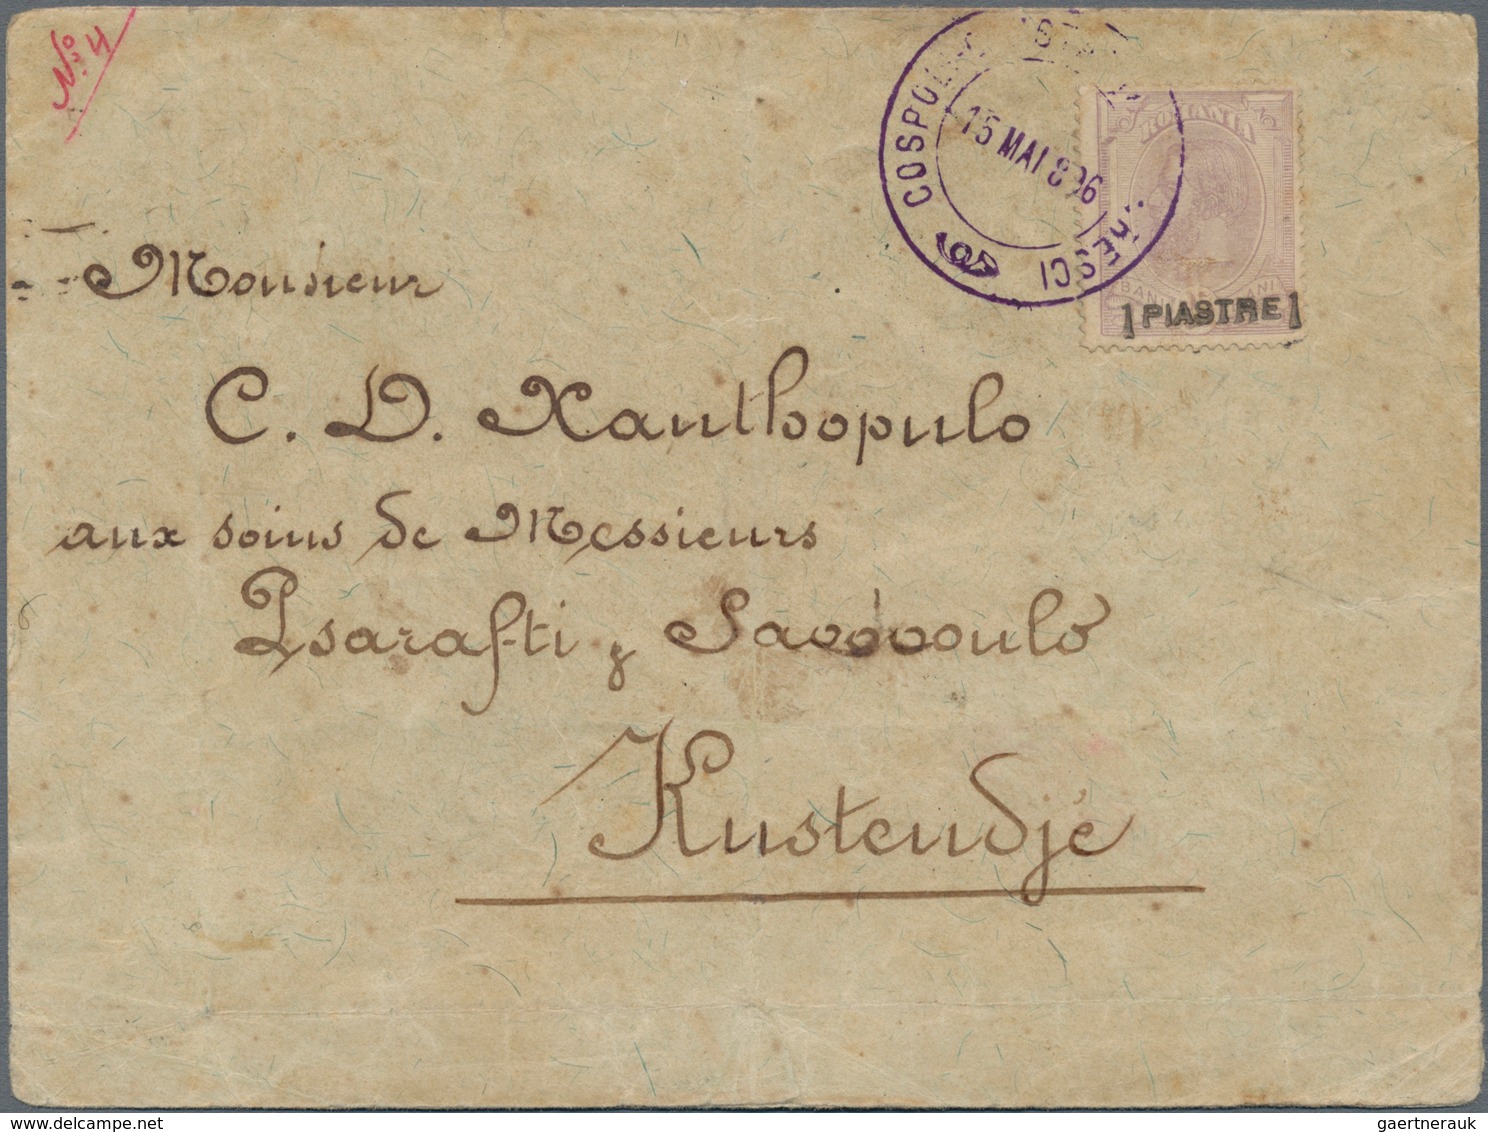 Rumänien - Rumänische Post In Der Levante: 1896, 2 X 10 Pa On 5 B Blue With Ovp In Violet, 20 Pa On - Levant (Turkey)